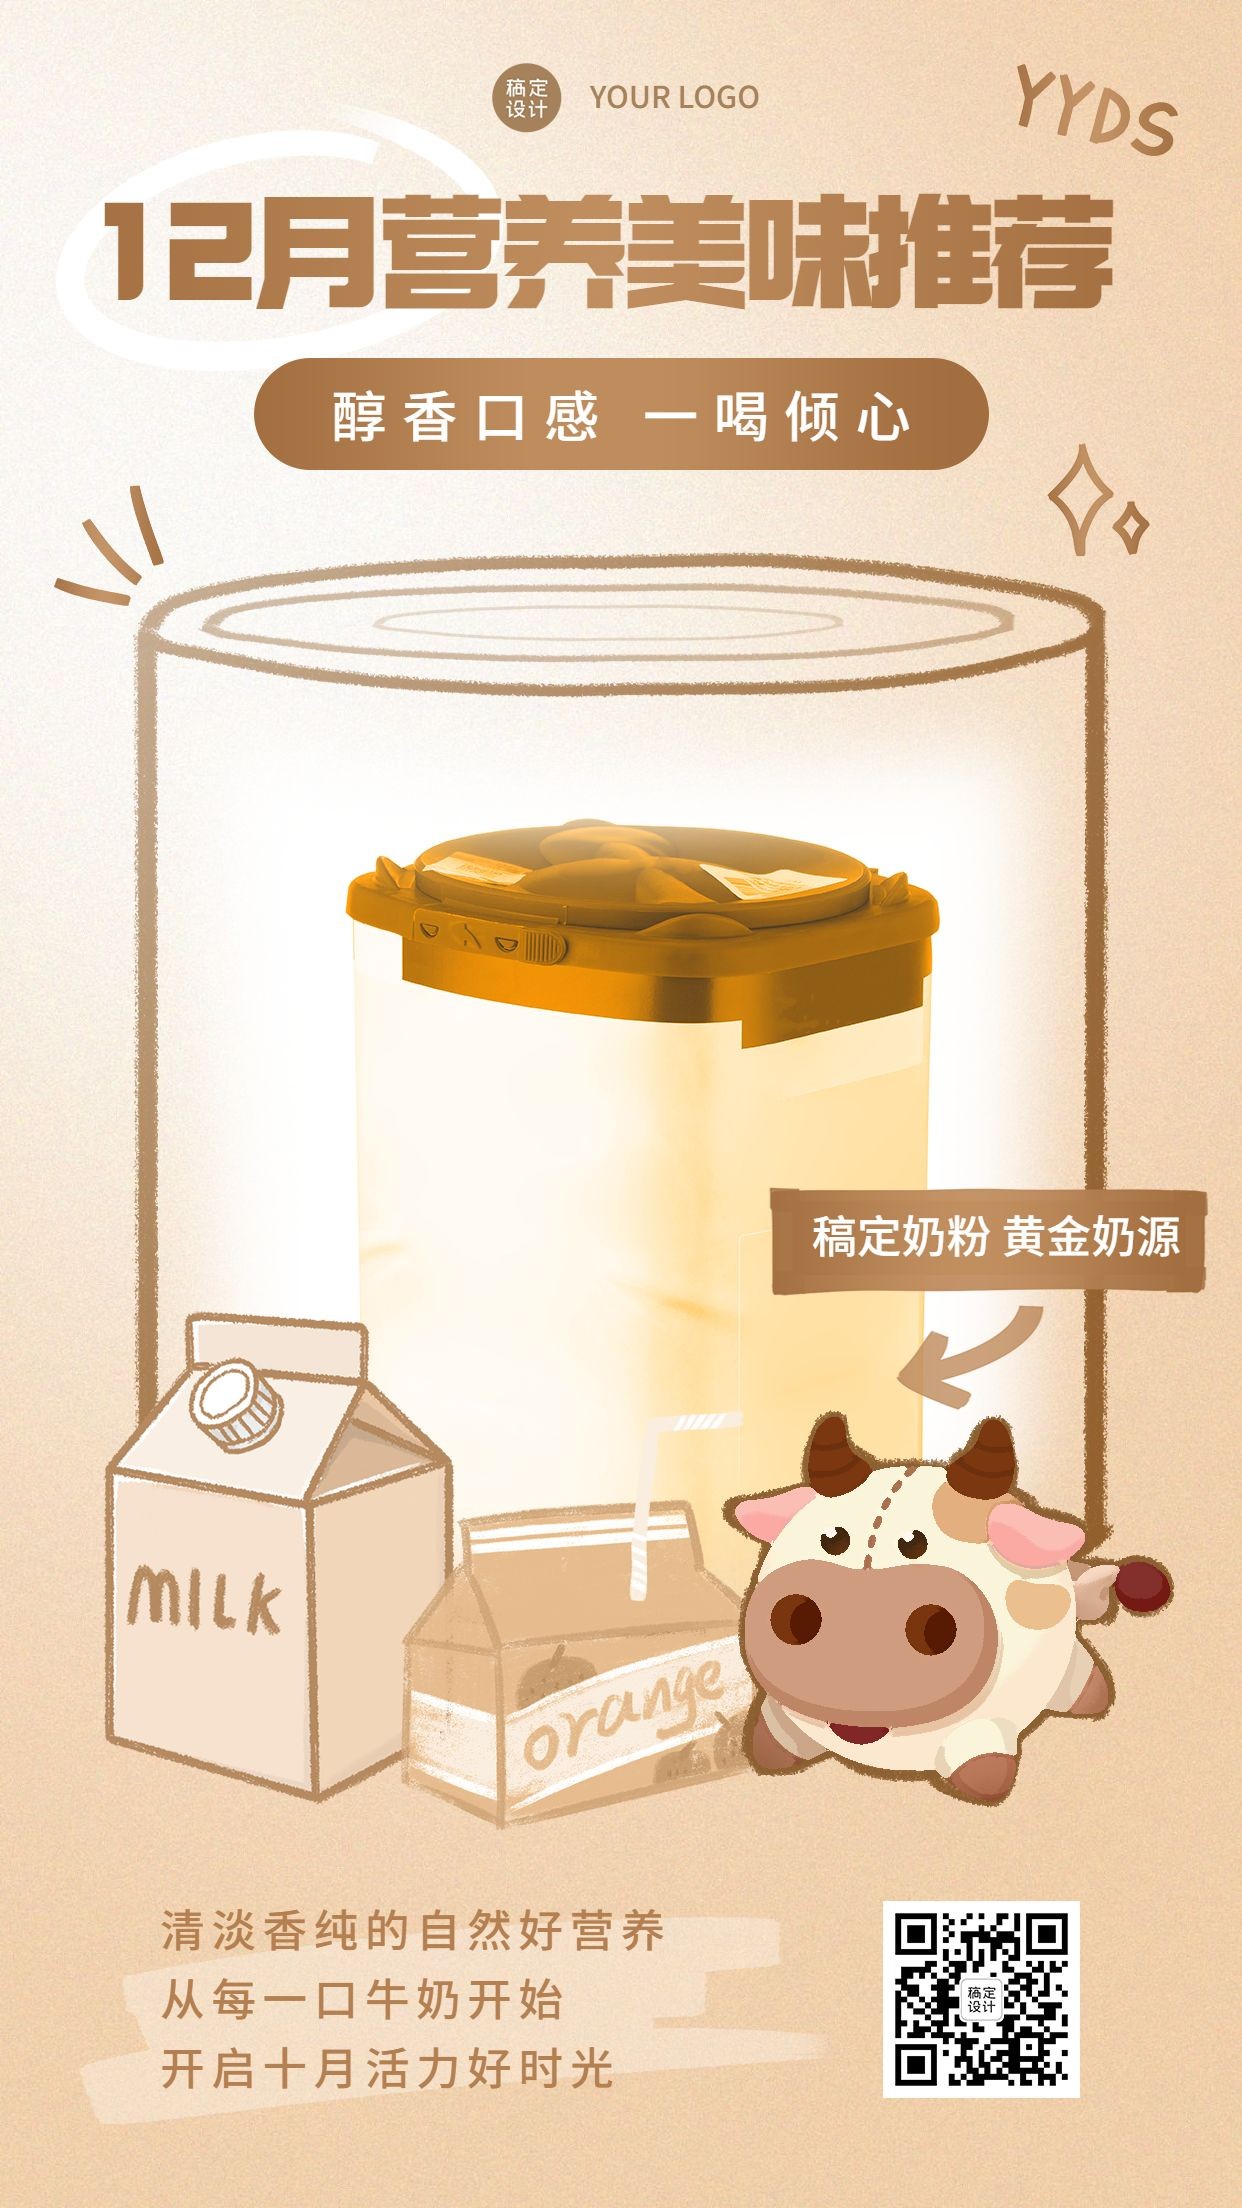 卡通手绘10月营销奶粉产品功效介绍预览效果